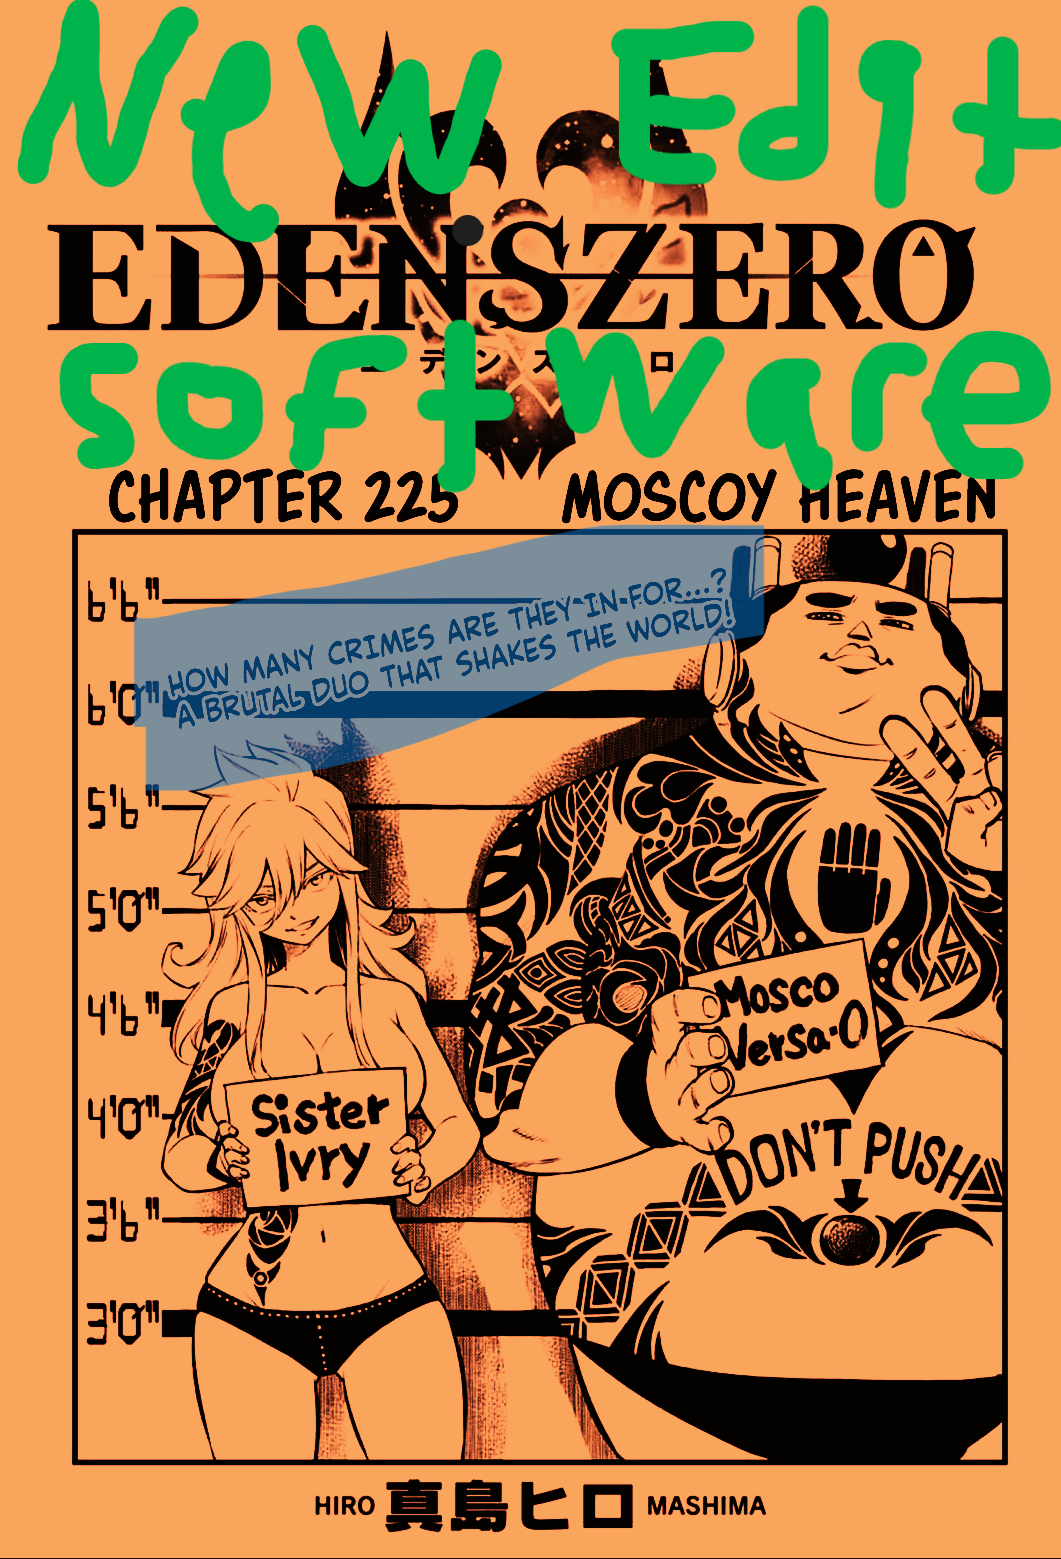 Mosco Mania! Edens Zero Chapter 225 BREAKDOWN